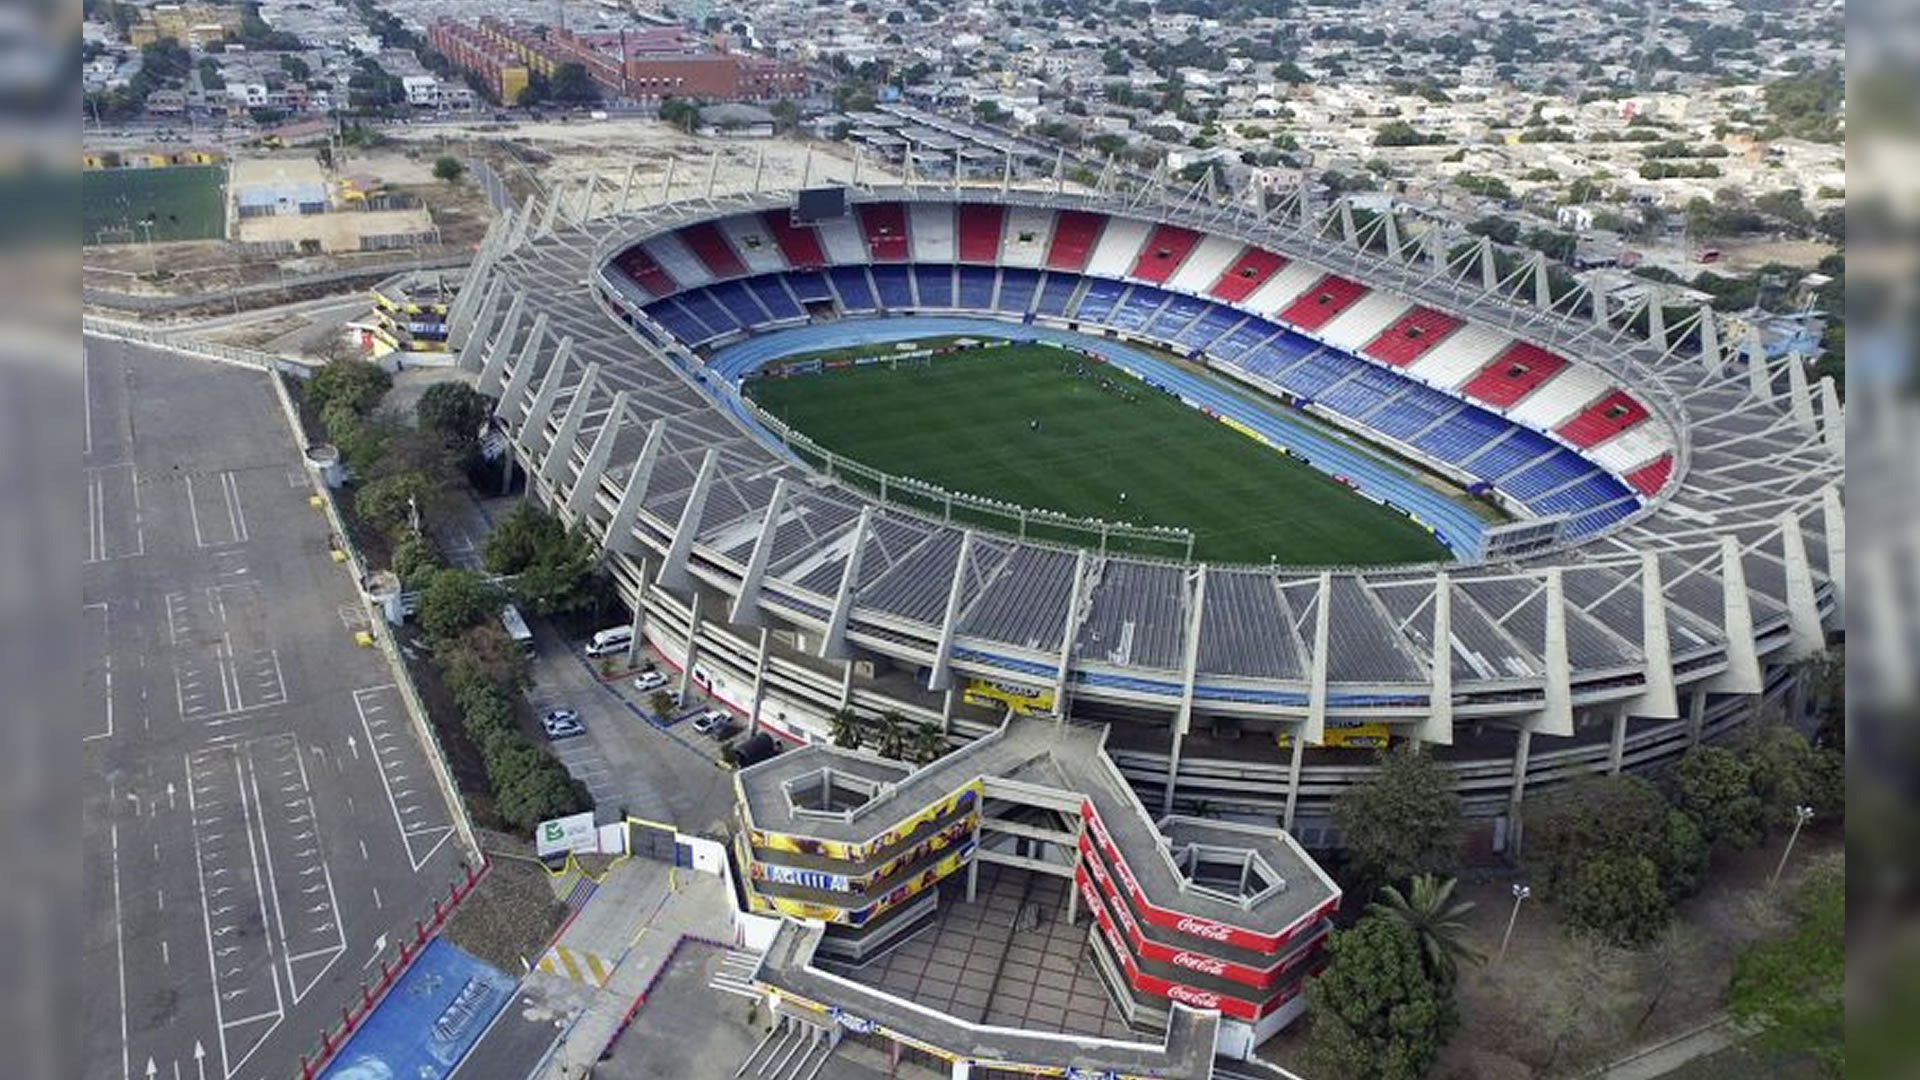 Vista áerea del Estadio Metropolitano de Barranquilla. Archivo particular.